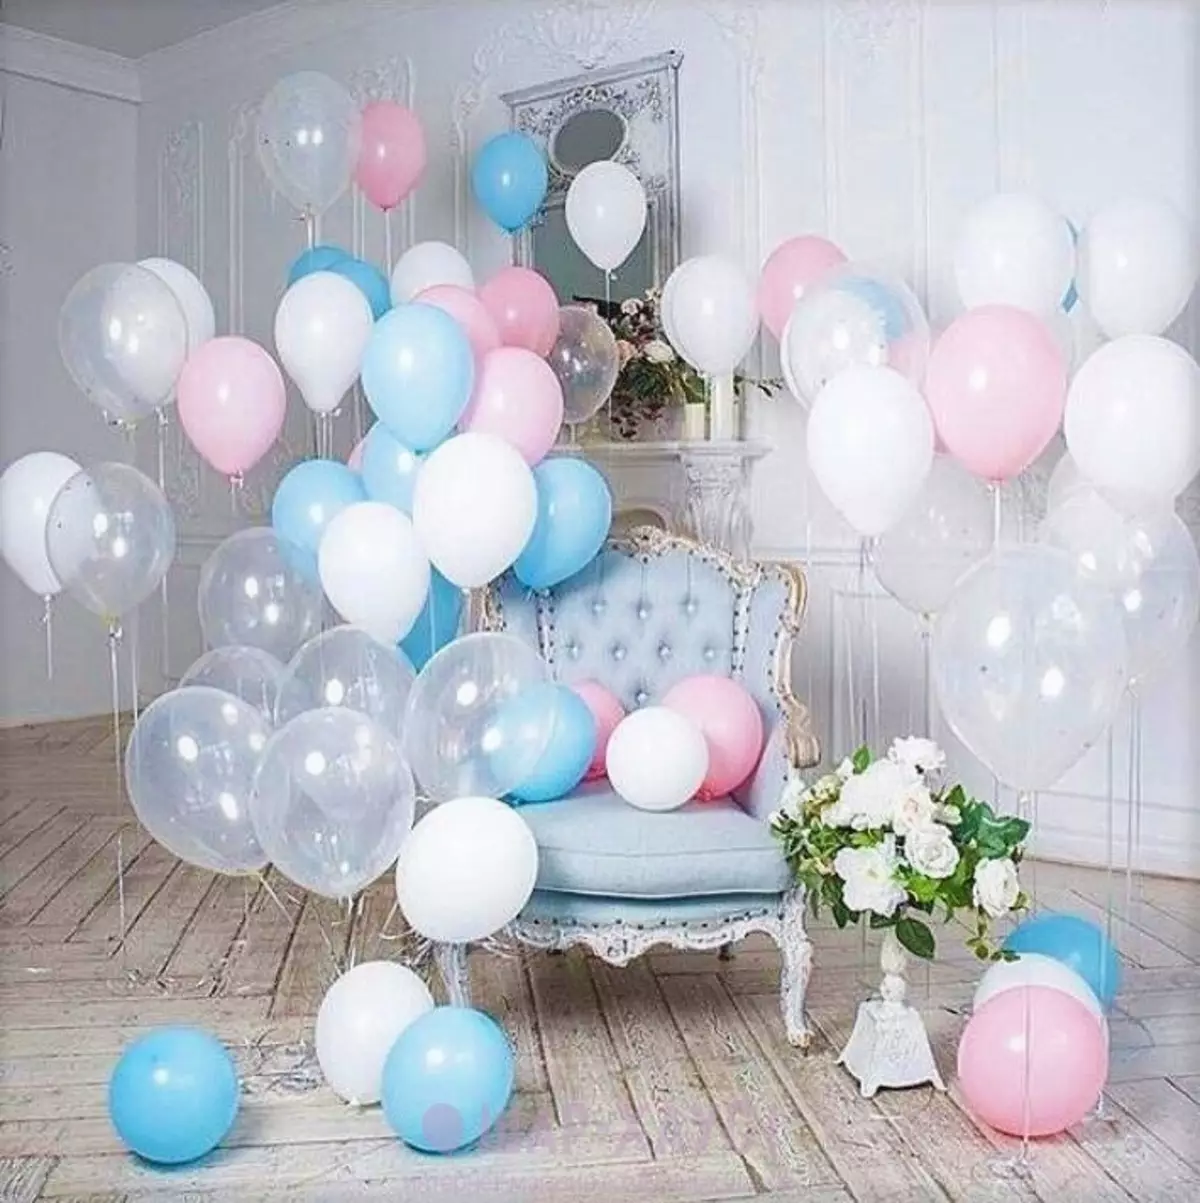 Zāles dekorēšana ar bumbiņām uz jubileju: sievietei un vīriešiem uz gadadienu 50 un 60, 30 un 35, 70 gadus veci un citos datumos ar baloniem 24641_23